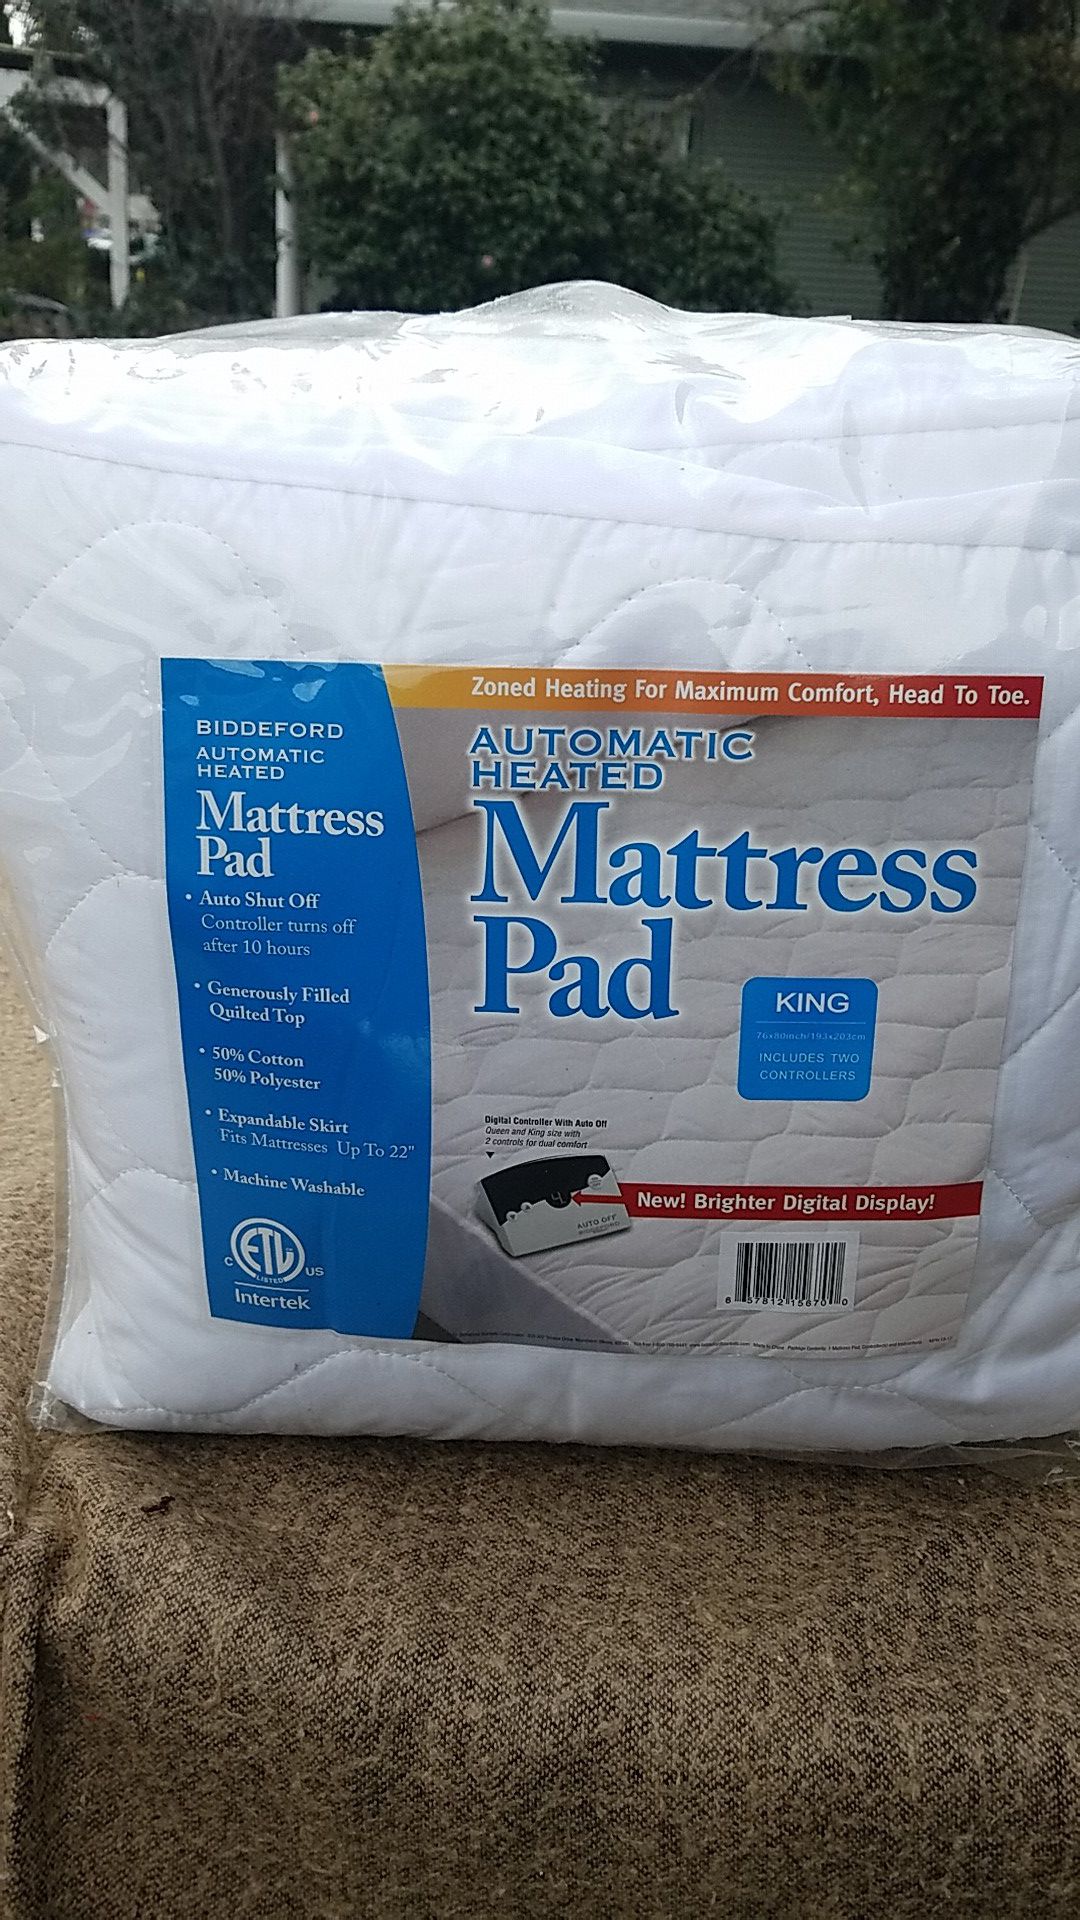 Automatic heated mattress pad king size